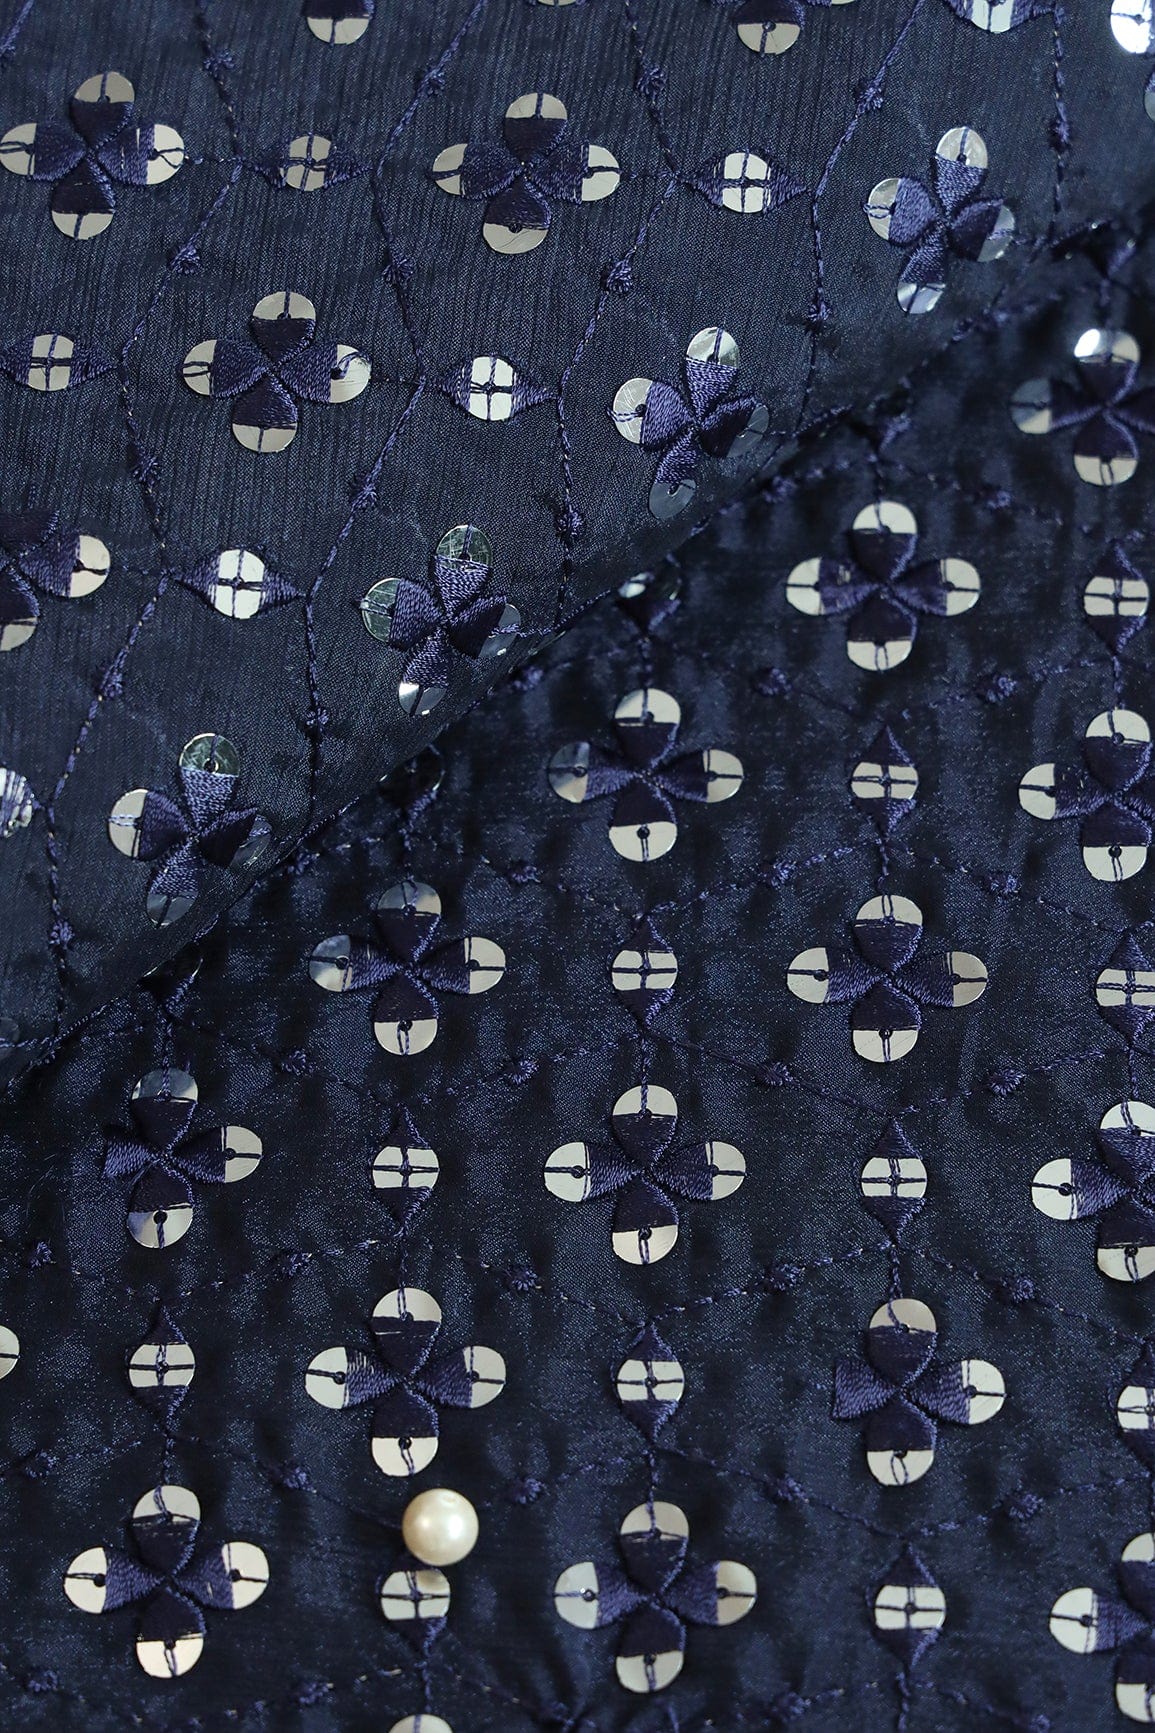 doeraa LEHENGA SET Navy Blue And Light Grey Unstitched Lehenga Set Fabric (3 Piece)